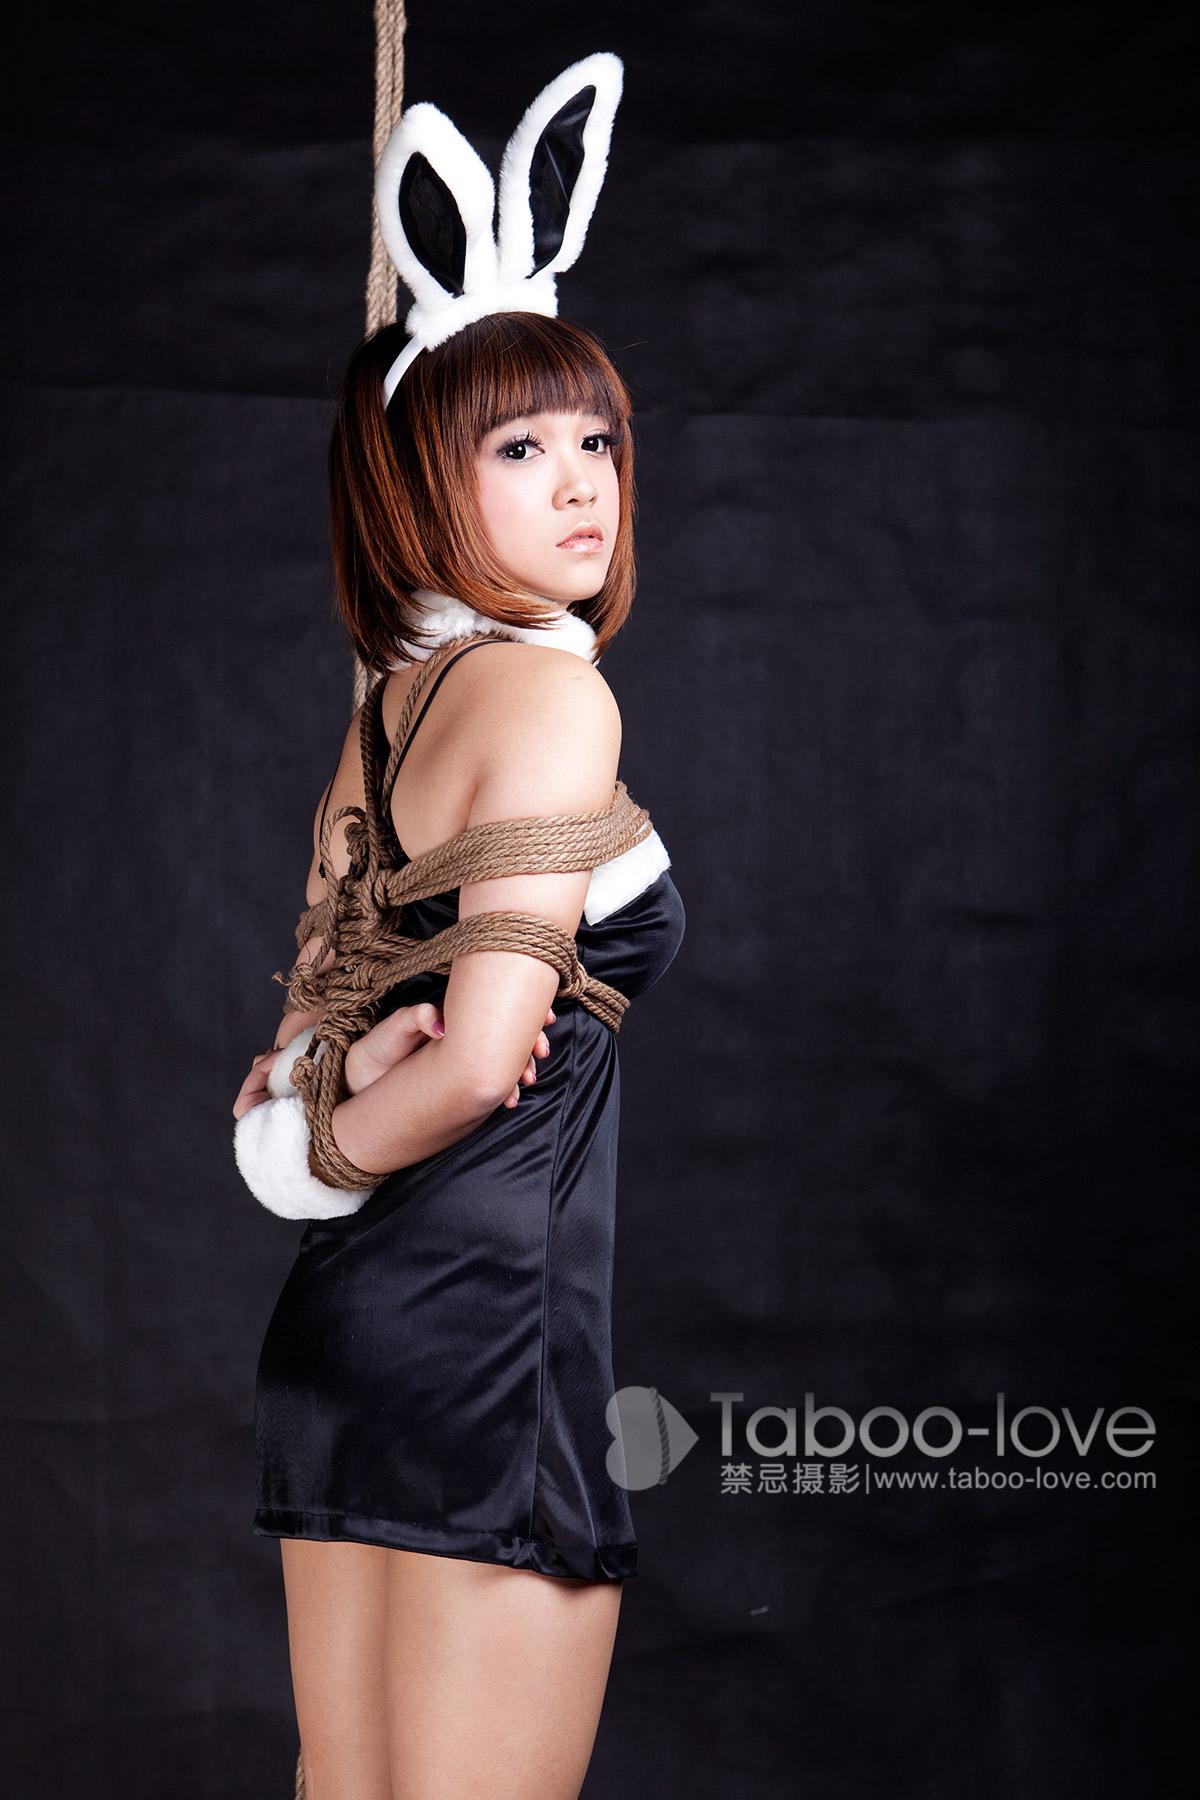 Taboo-love NO.033 可樂 可樂妹妹小兔女郎 禁忌攝影 - 32.jpg